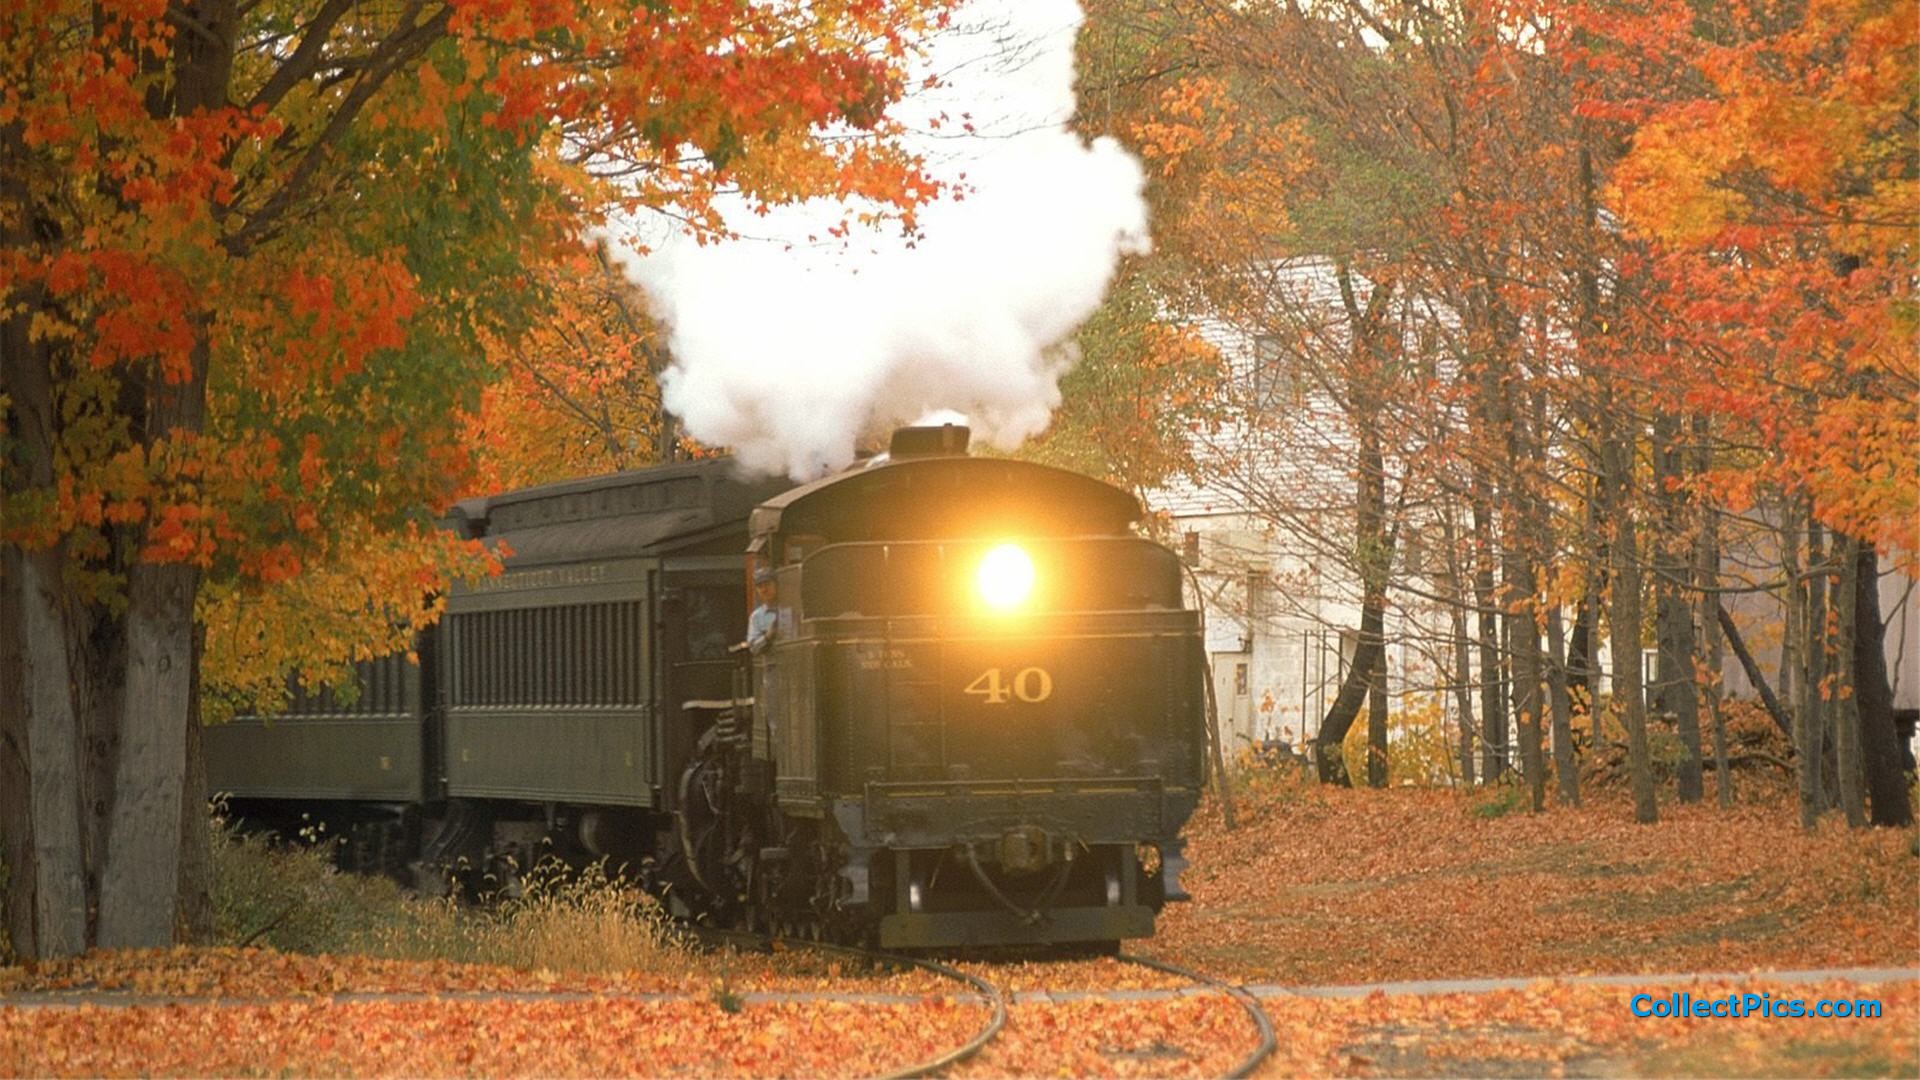 Train In Autumn Wallpaper HD 1920x1080 4867